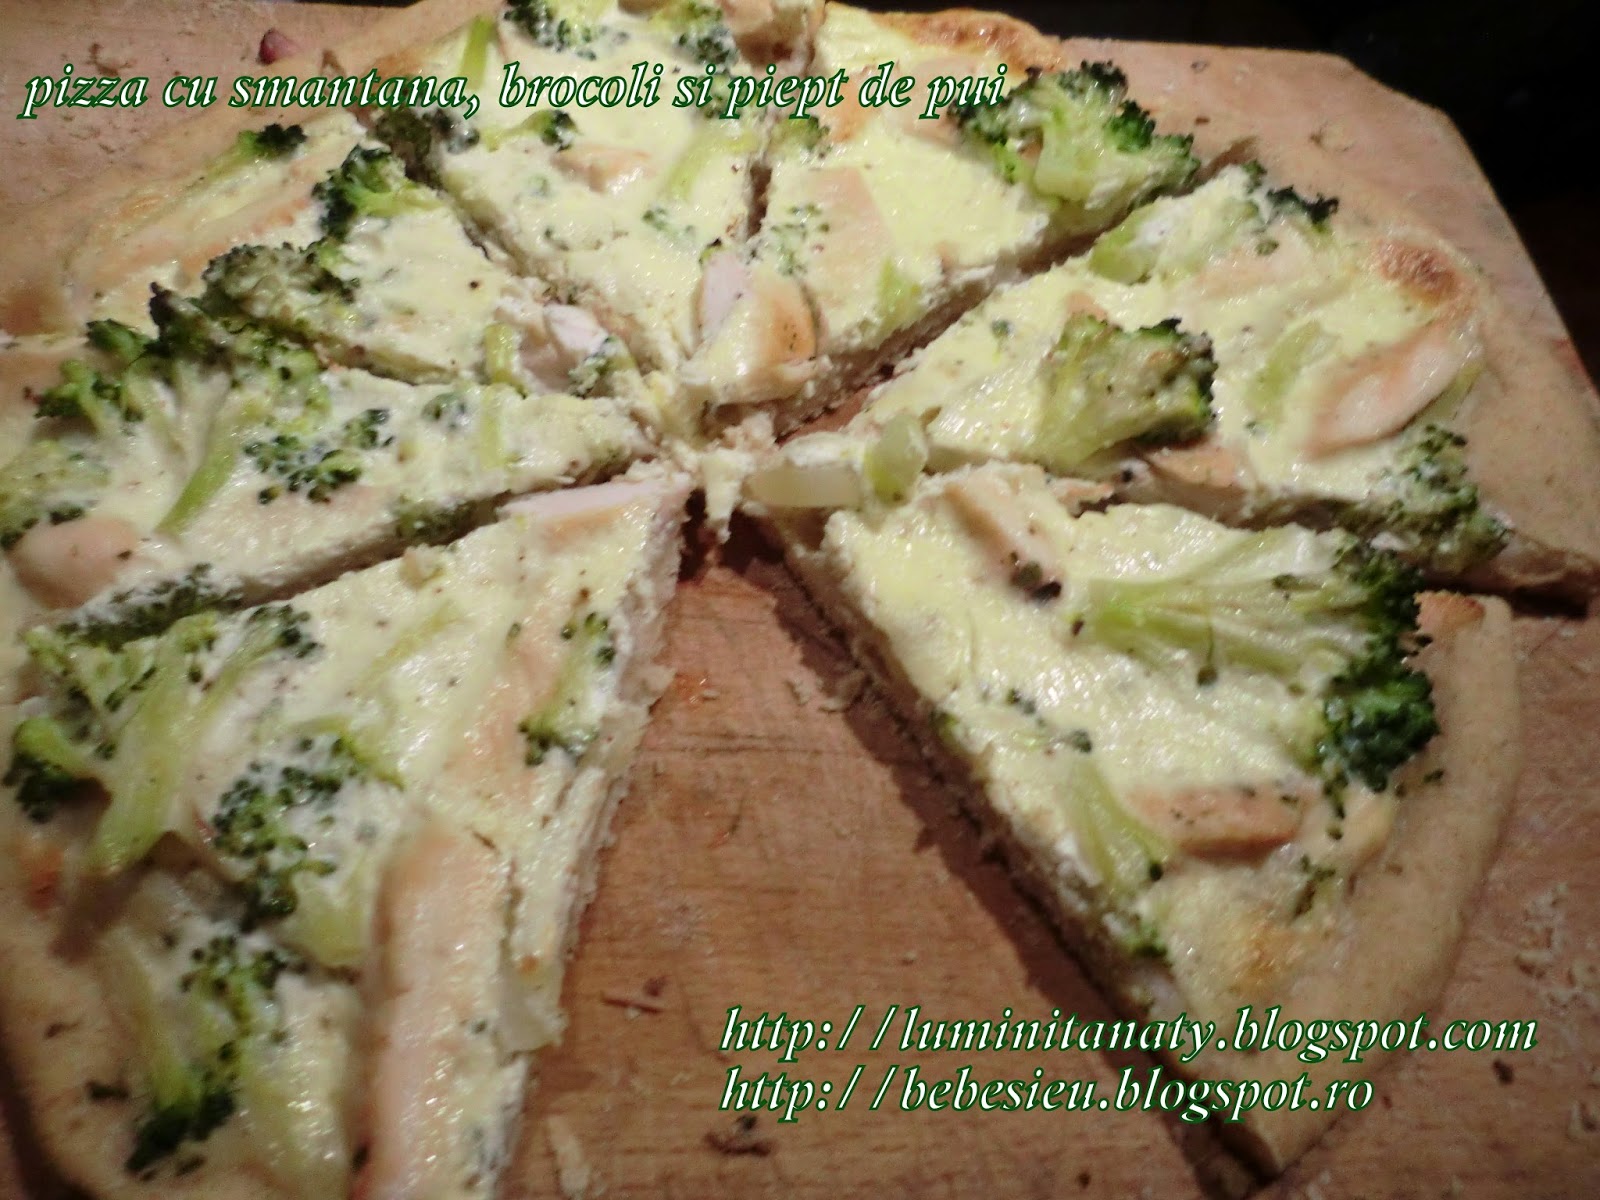 Pizza cu broccoli, piept de pui si smantana